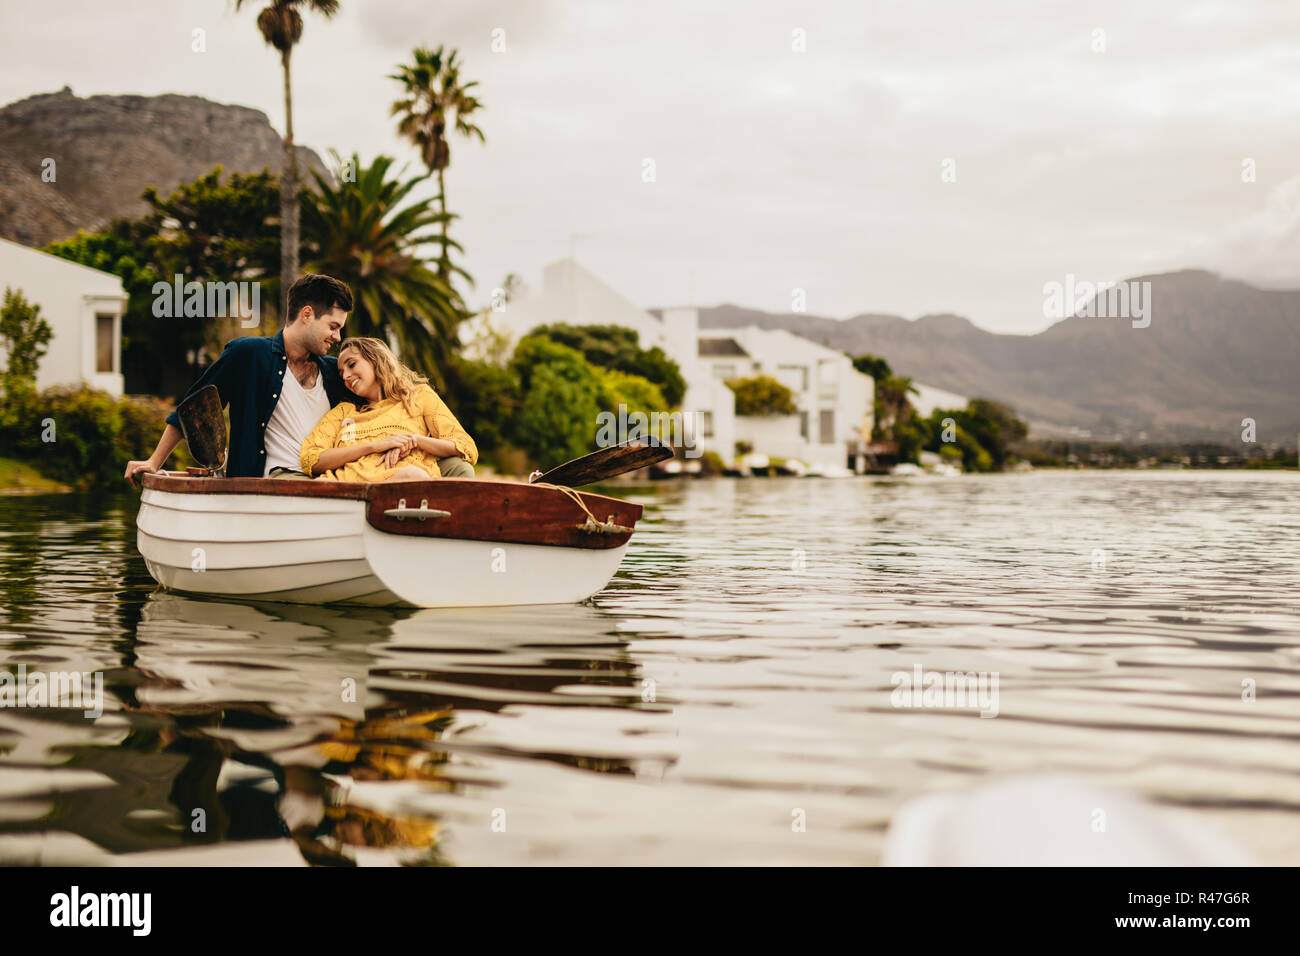 Jeune homme et femme sur un bateau ce jour dans un lac avec des collines et maisons en arrière-plan. Femme assise appuyée sur son petit ami détendue sur un bateau date. Banque D'Images